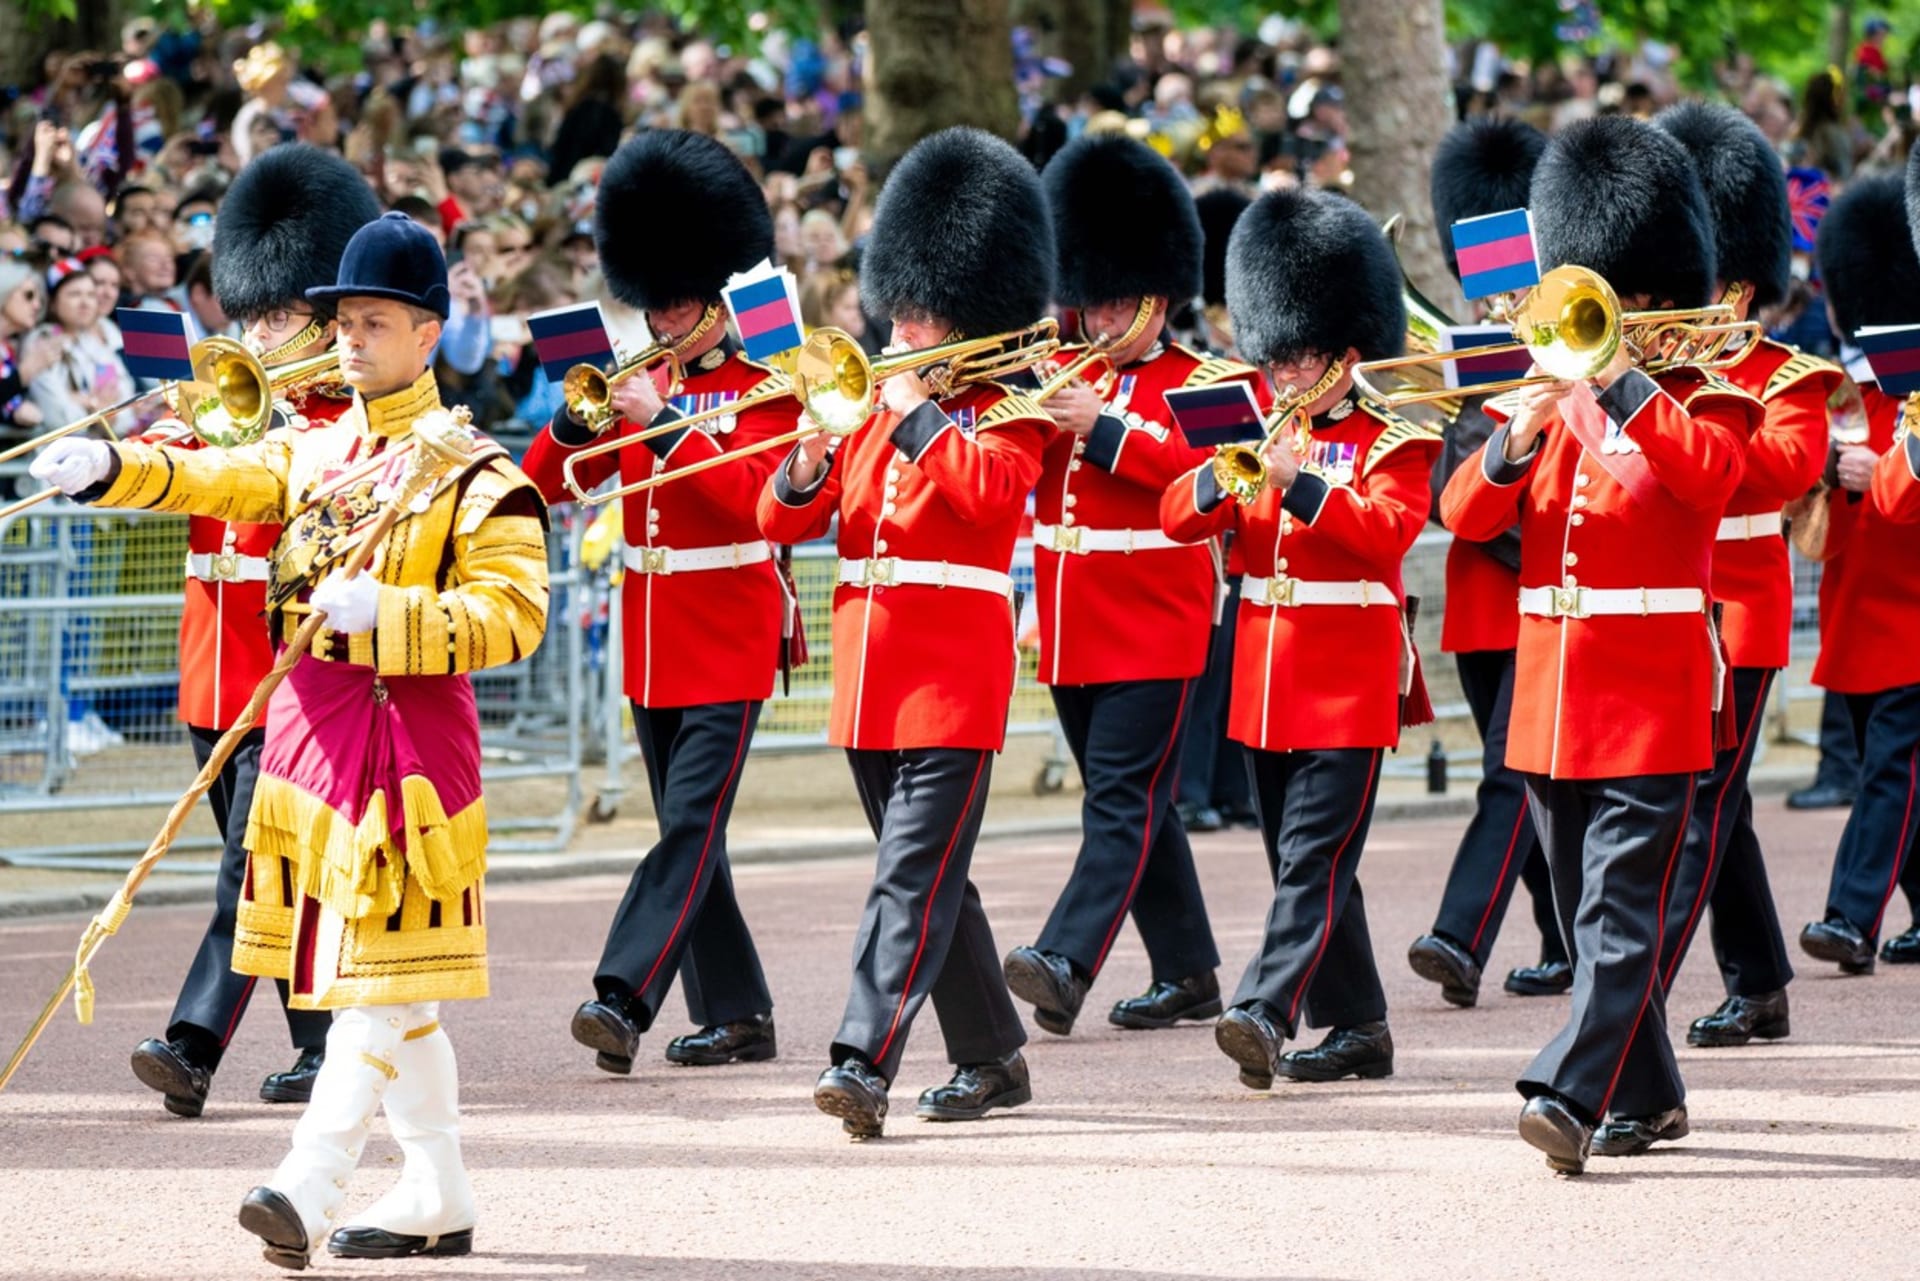 Velká Británie oslavila 70 let královny Alžběty II. na trůnu.